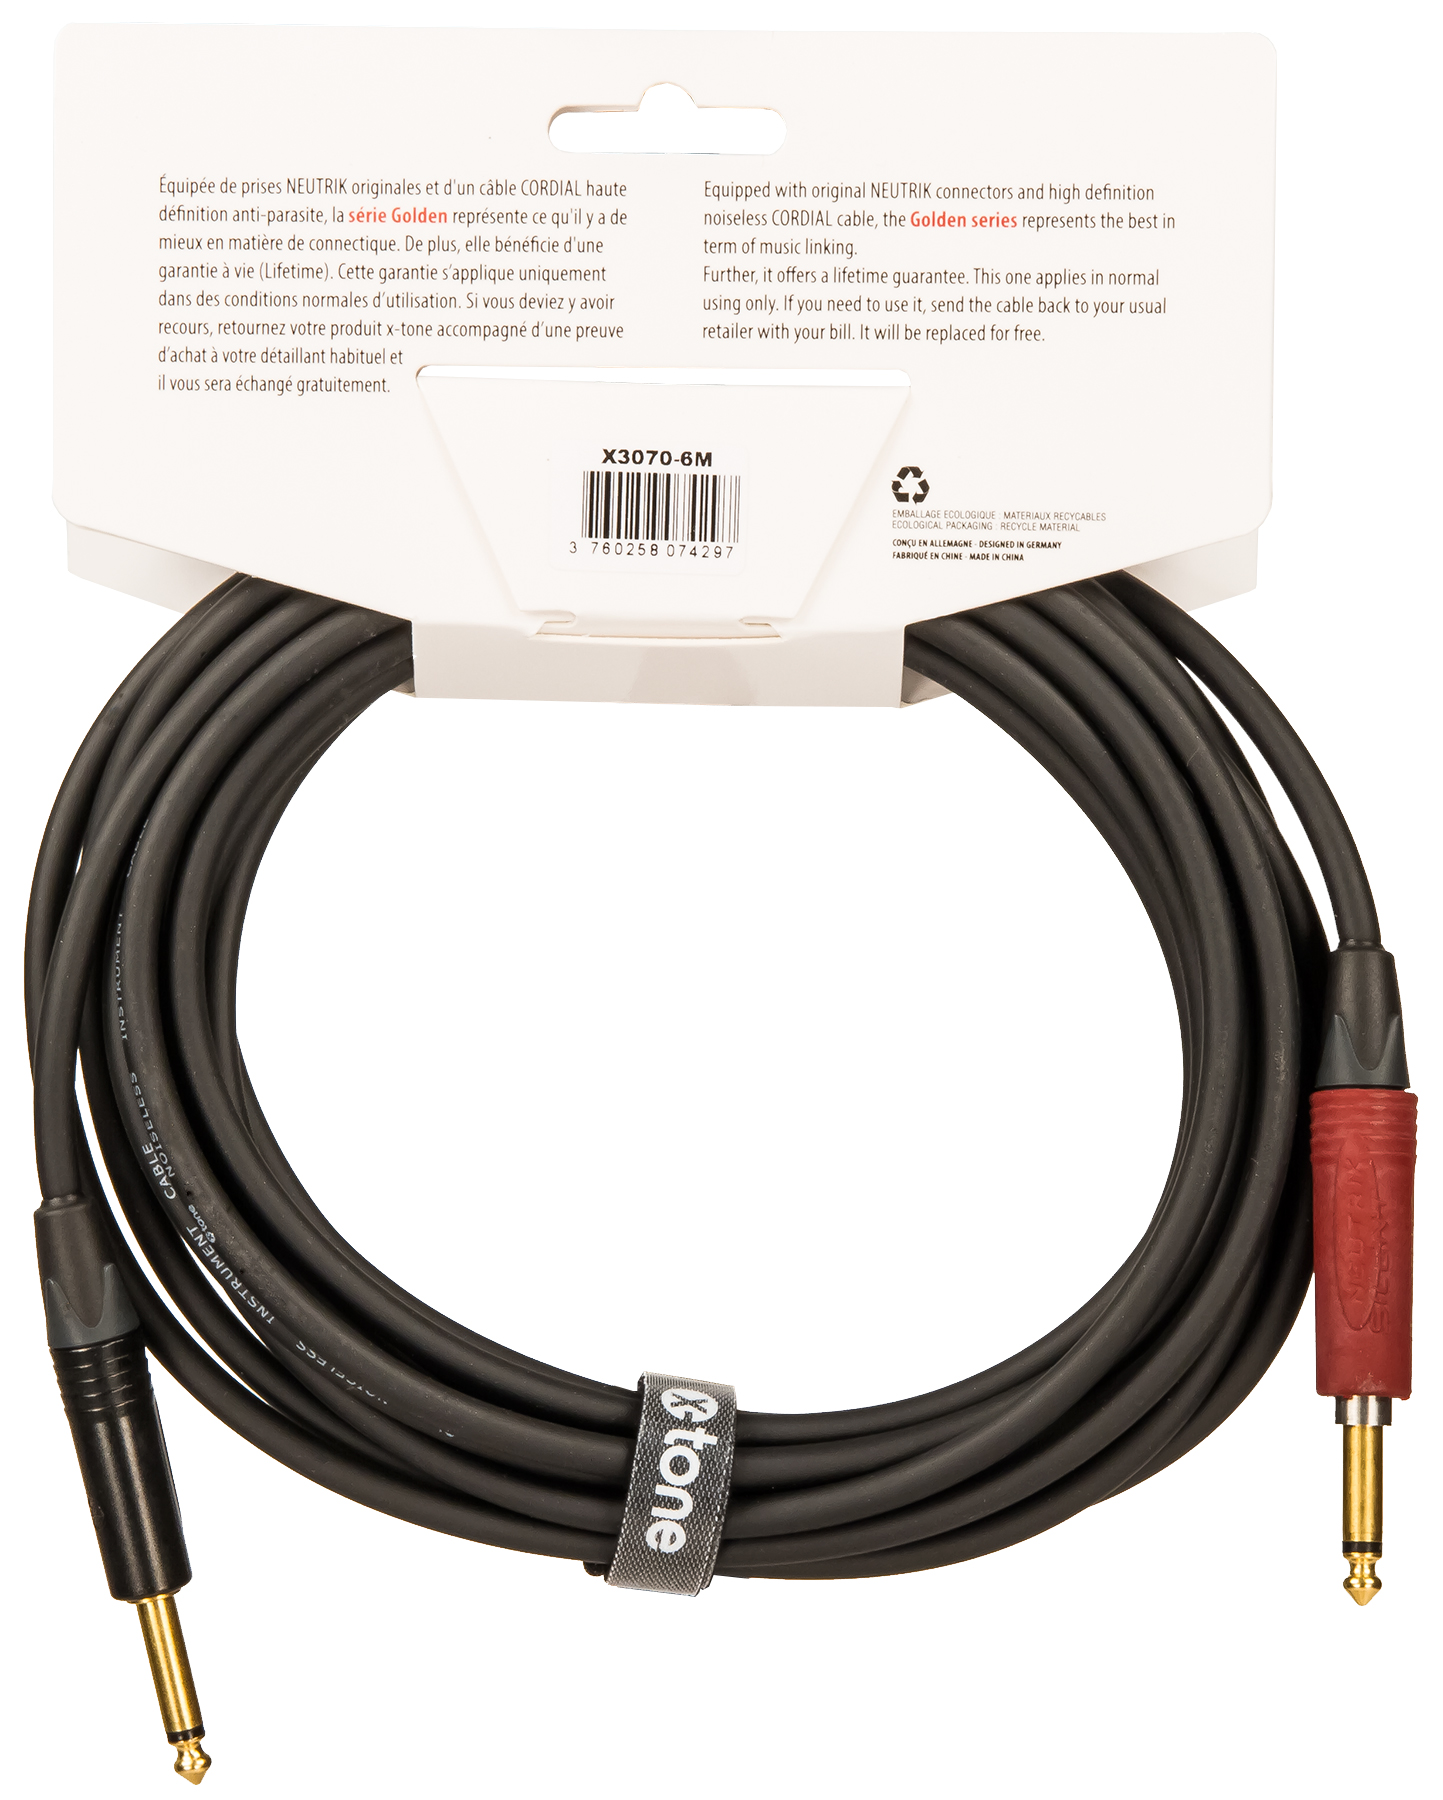 X-tone X3070-6m Instrument Cable Golden Neutrik Silent Droit/droit 6m - CÂble - Variation 1